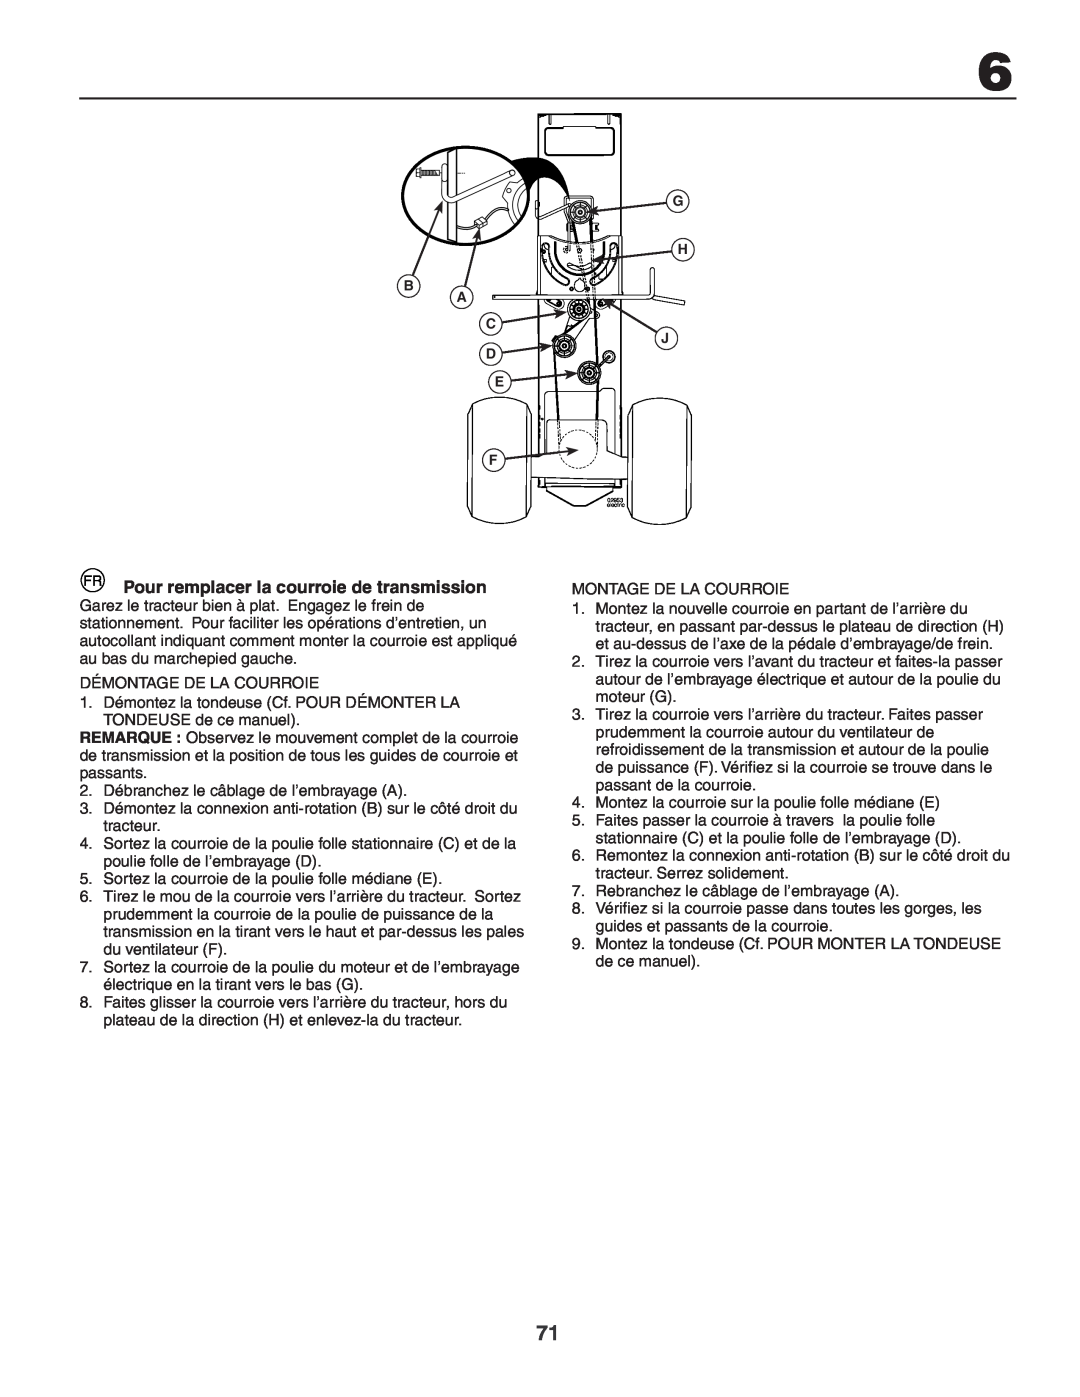 Husqvarna GTH260XP instruction manual Pour remplacer la courroie de transmission, Démontage De La Courroie 